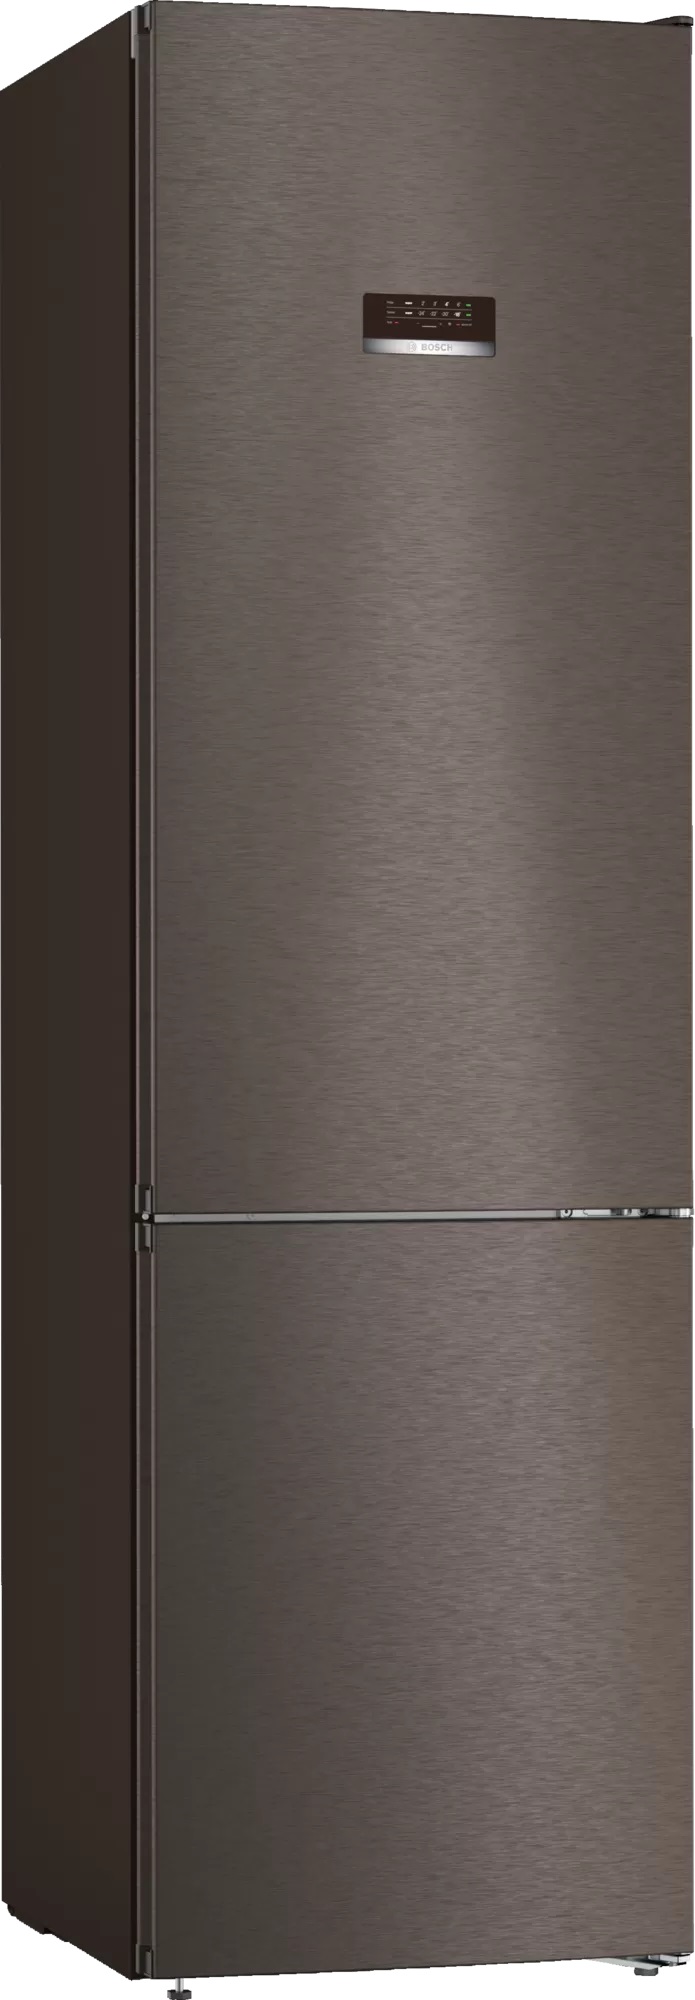 Двухкамерный холодильник BOSCH KGN39XG20R																		 — описание, фото, цены в интернет-магазине Премьер Техно